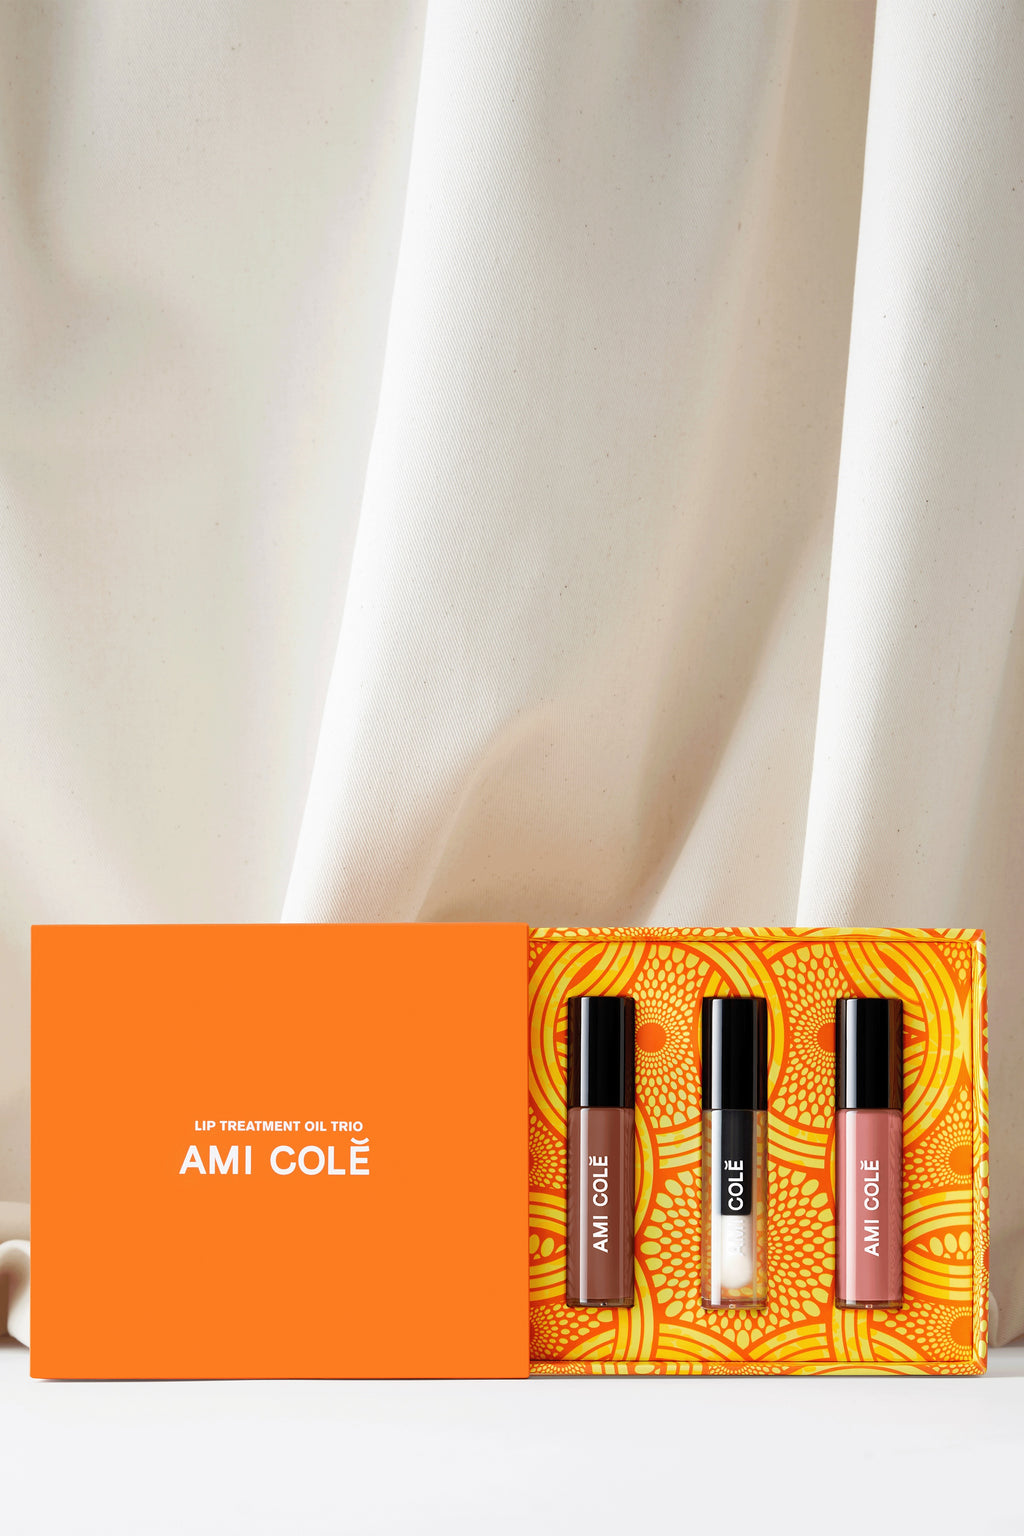 AMI COLE | Limited Edition Lip Treatment Oil Trio